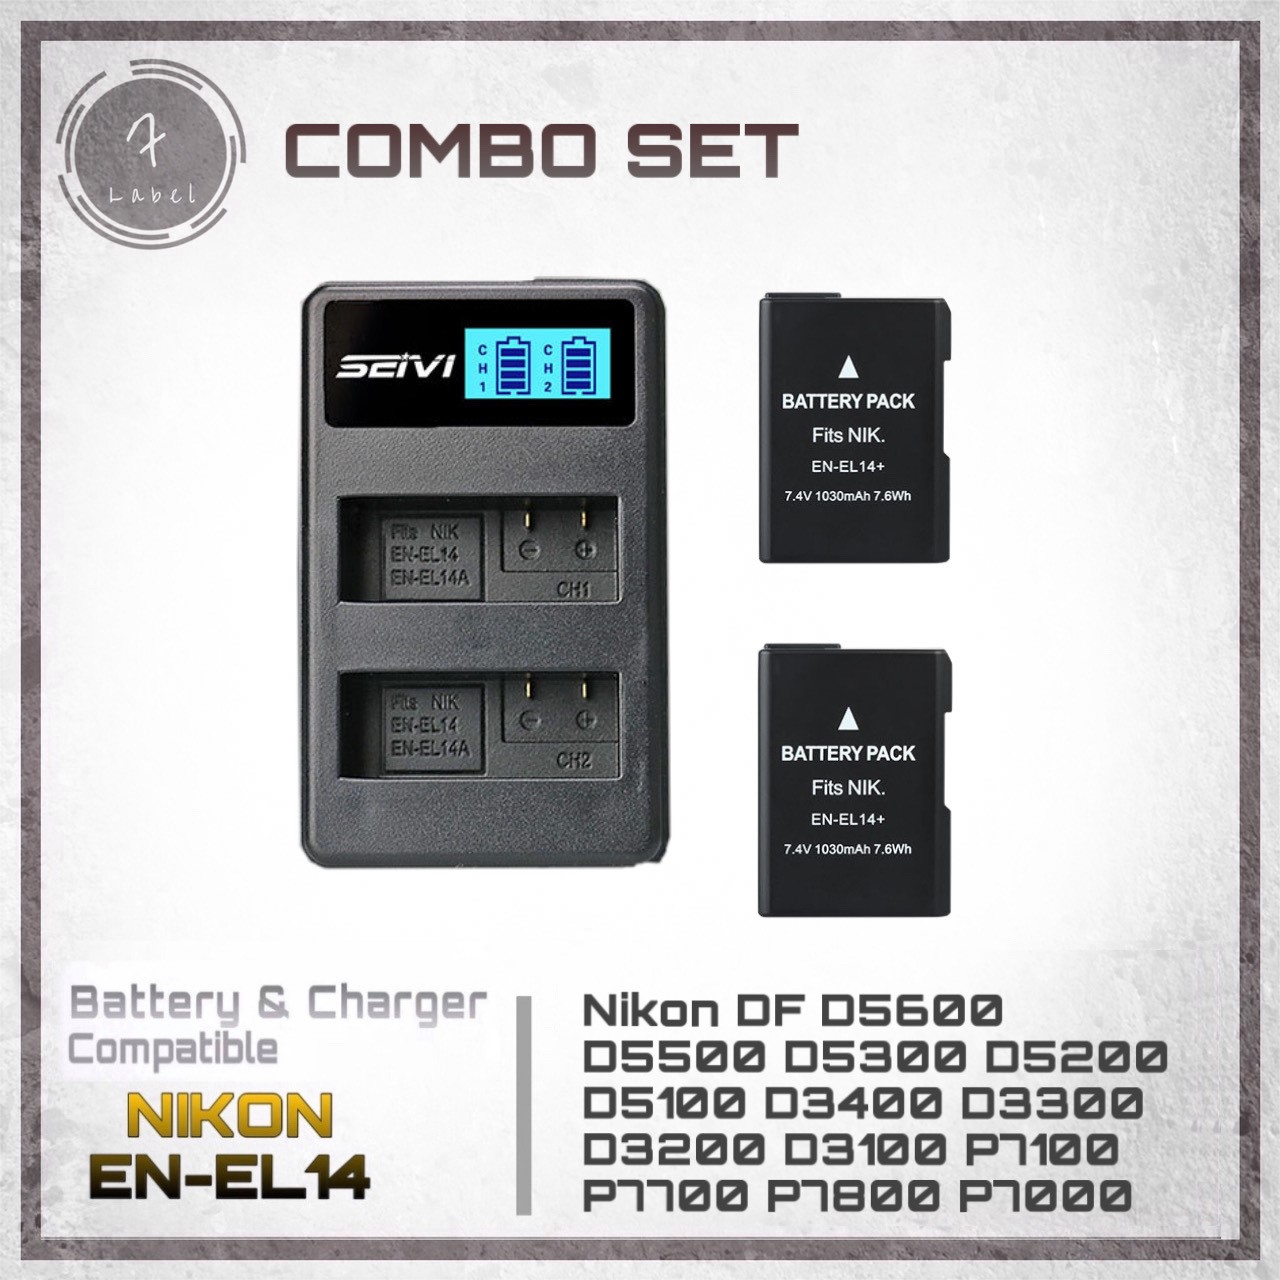 Combo Set : Nikon EN-EL14 แบต 2 ก้อน+แท่นชาร์จ 1 อัน (แถมฟรีถุงผ้า  สำหรับกล้อง Nikon DF D5600 D5500 D5300 D5200 D5100 D3400 D3300 D3200 D3100 P7100 P7700 P7800 P7000